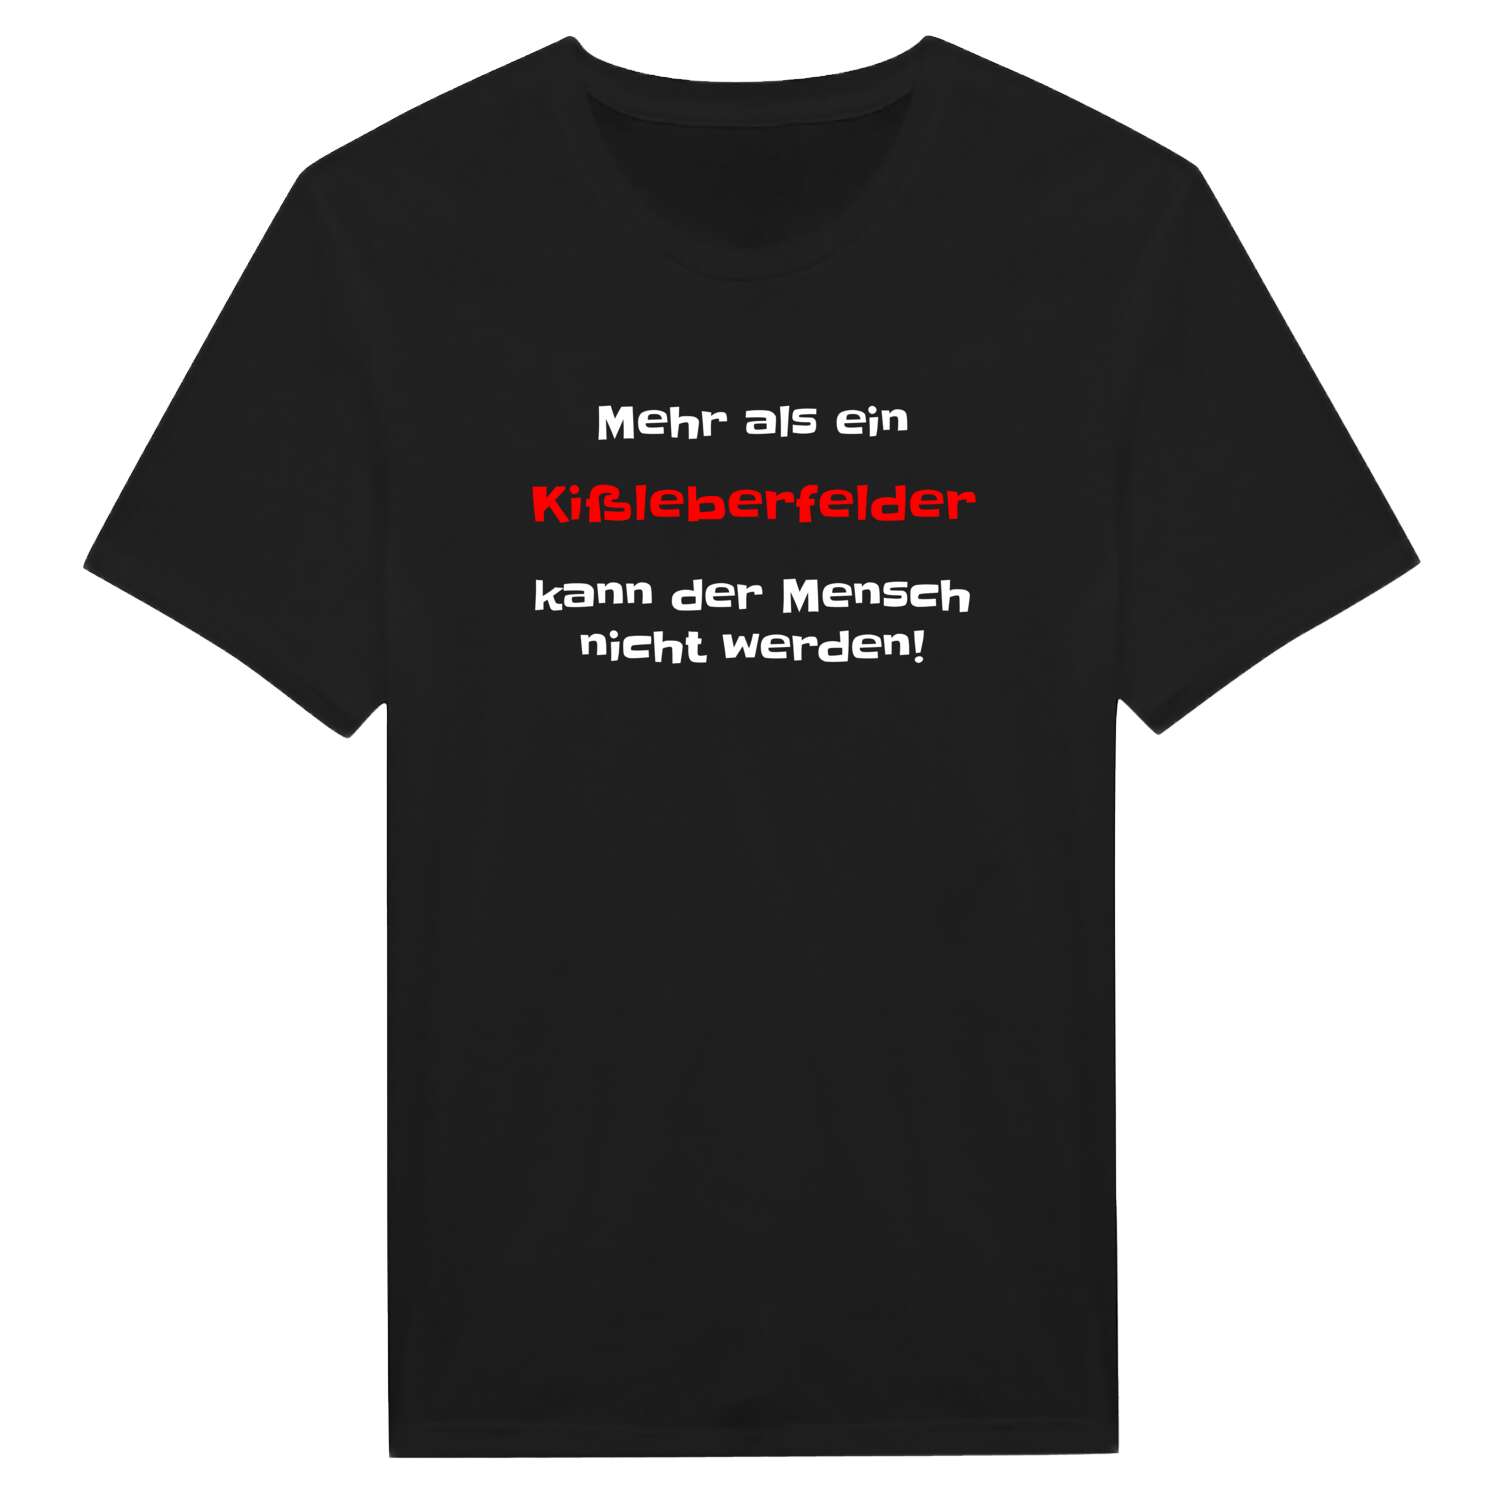 Kißleberfeld T-Shirt »Mehr als ein«